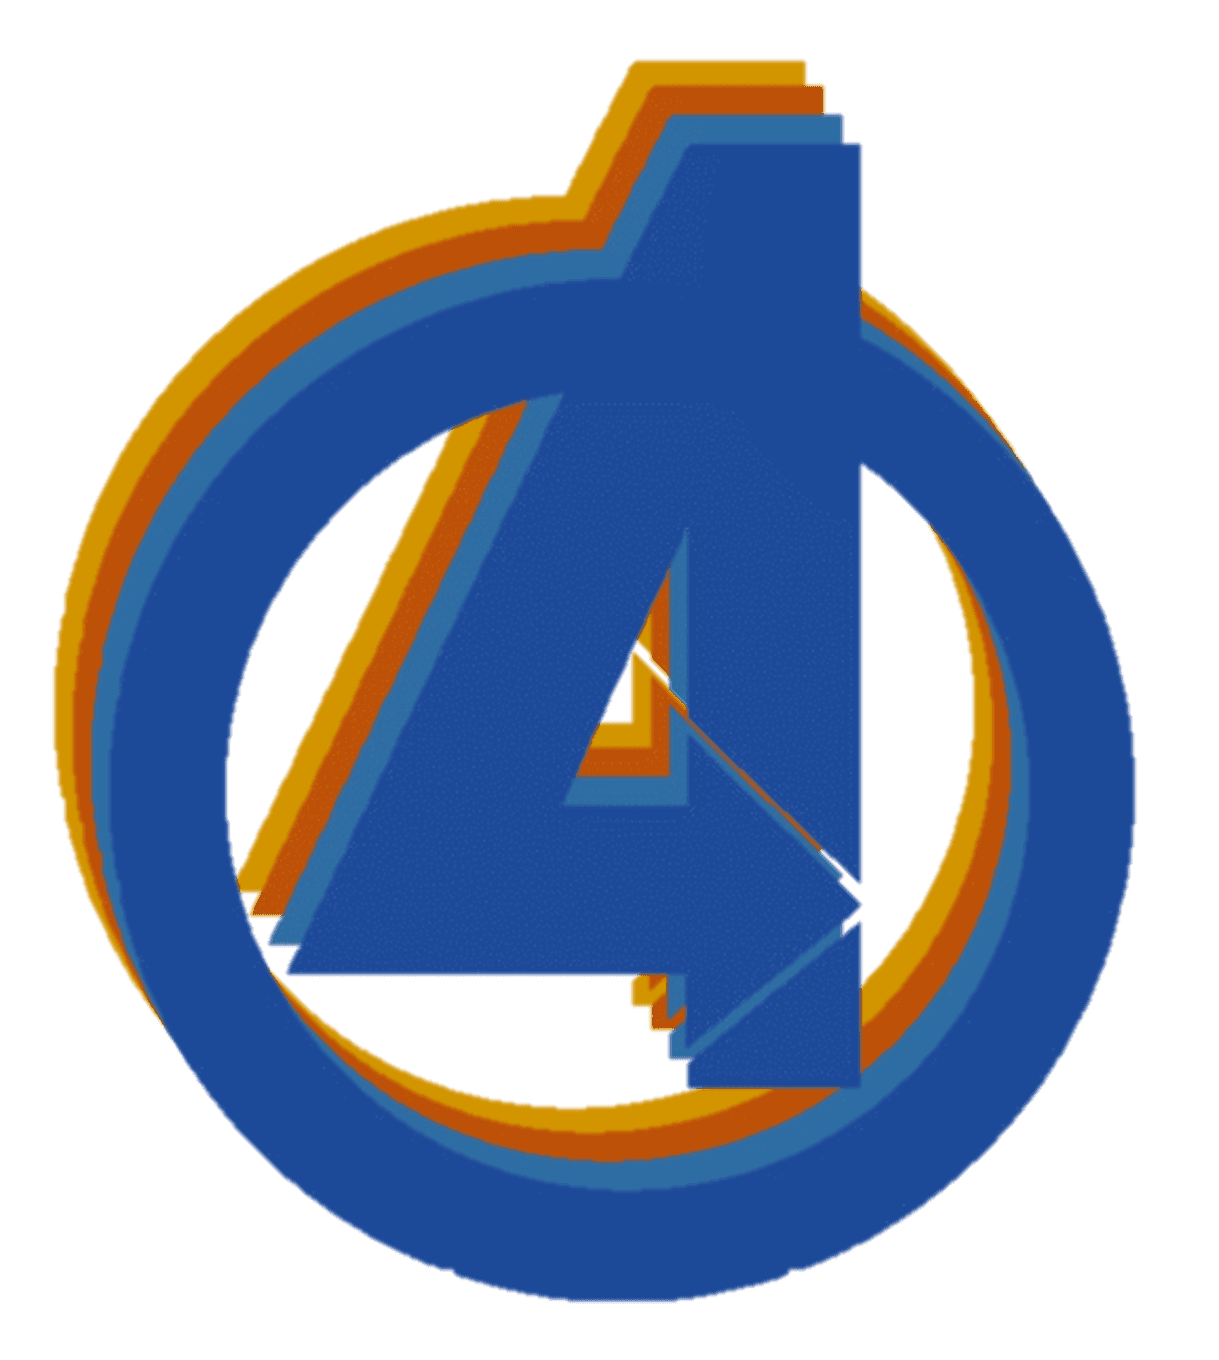 Fantastic-Four-logo-Avengers-inspired-rainbow